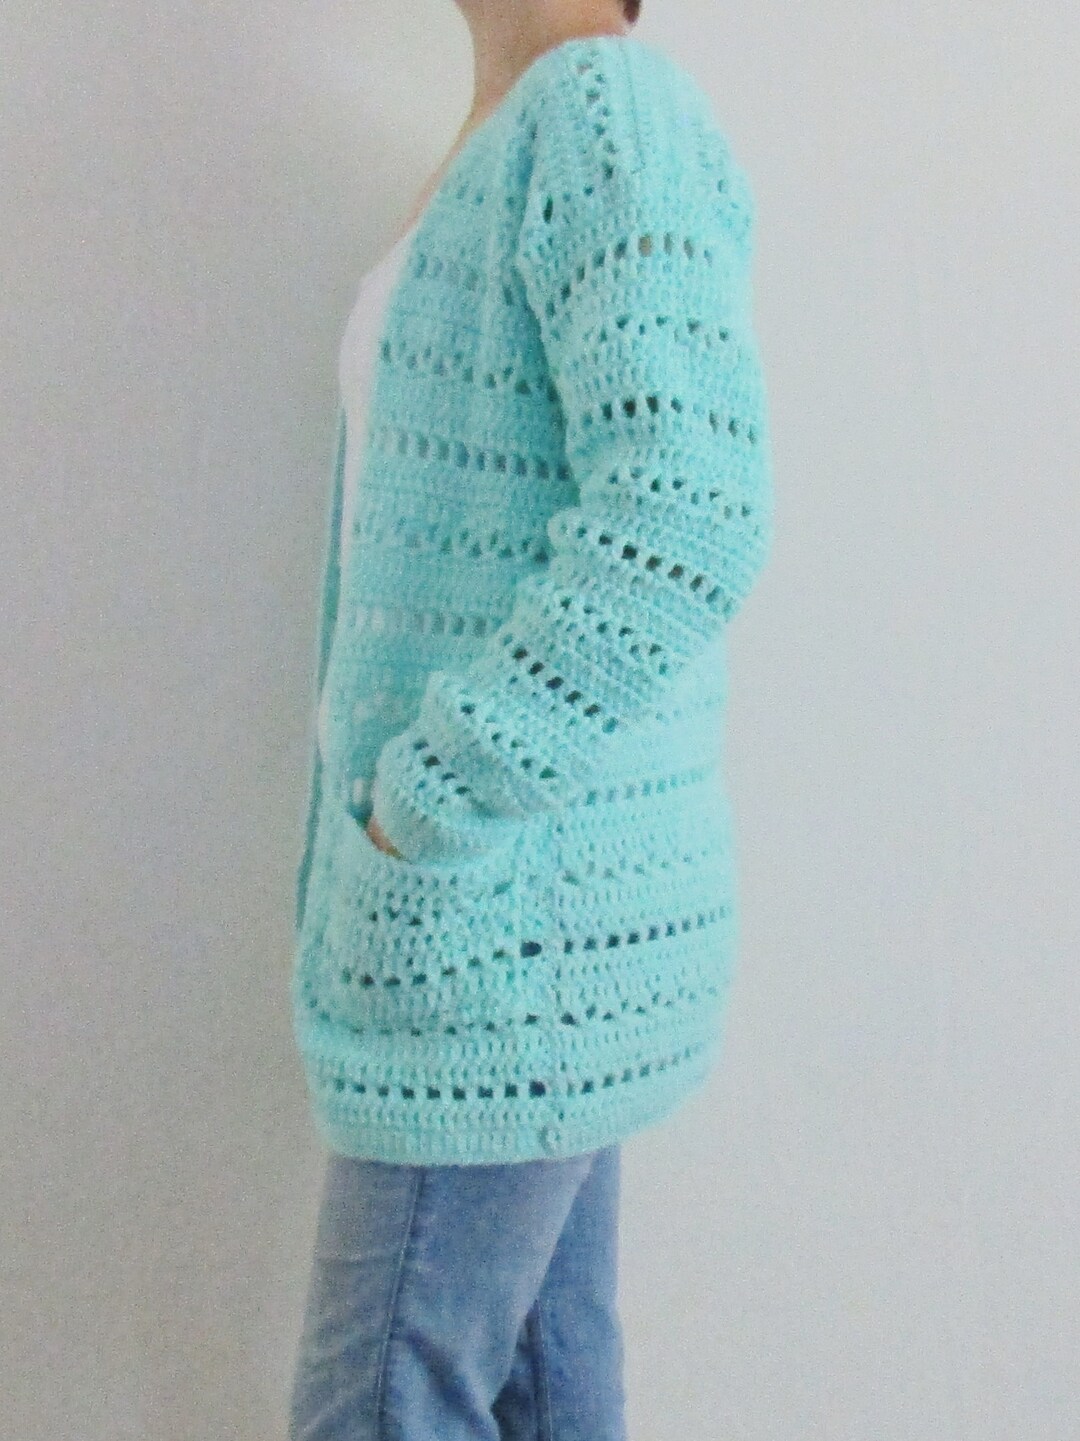 CROCHET PATTERN, the Chrislyn Cardigan, Sweater Pattern, Crochet